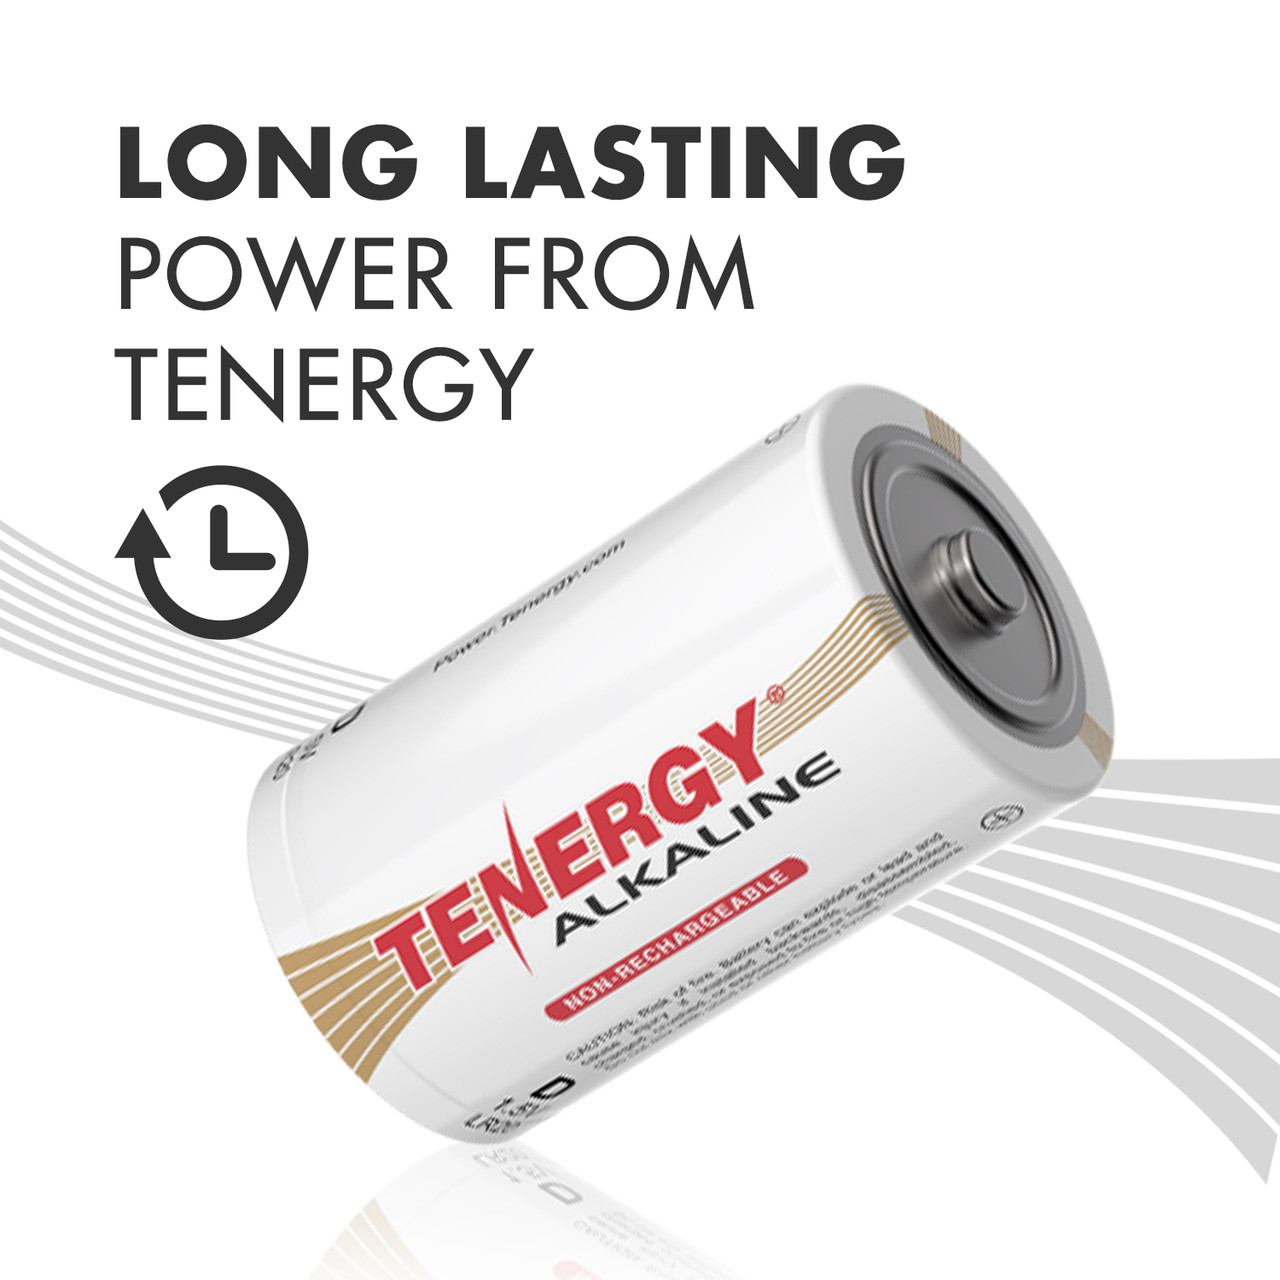  Tenergy  24pcs D Size (LR20) Alkaline Batteries